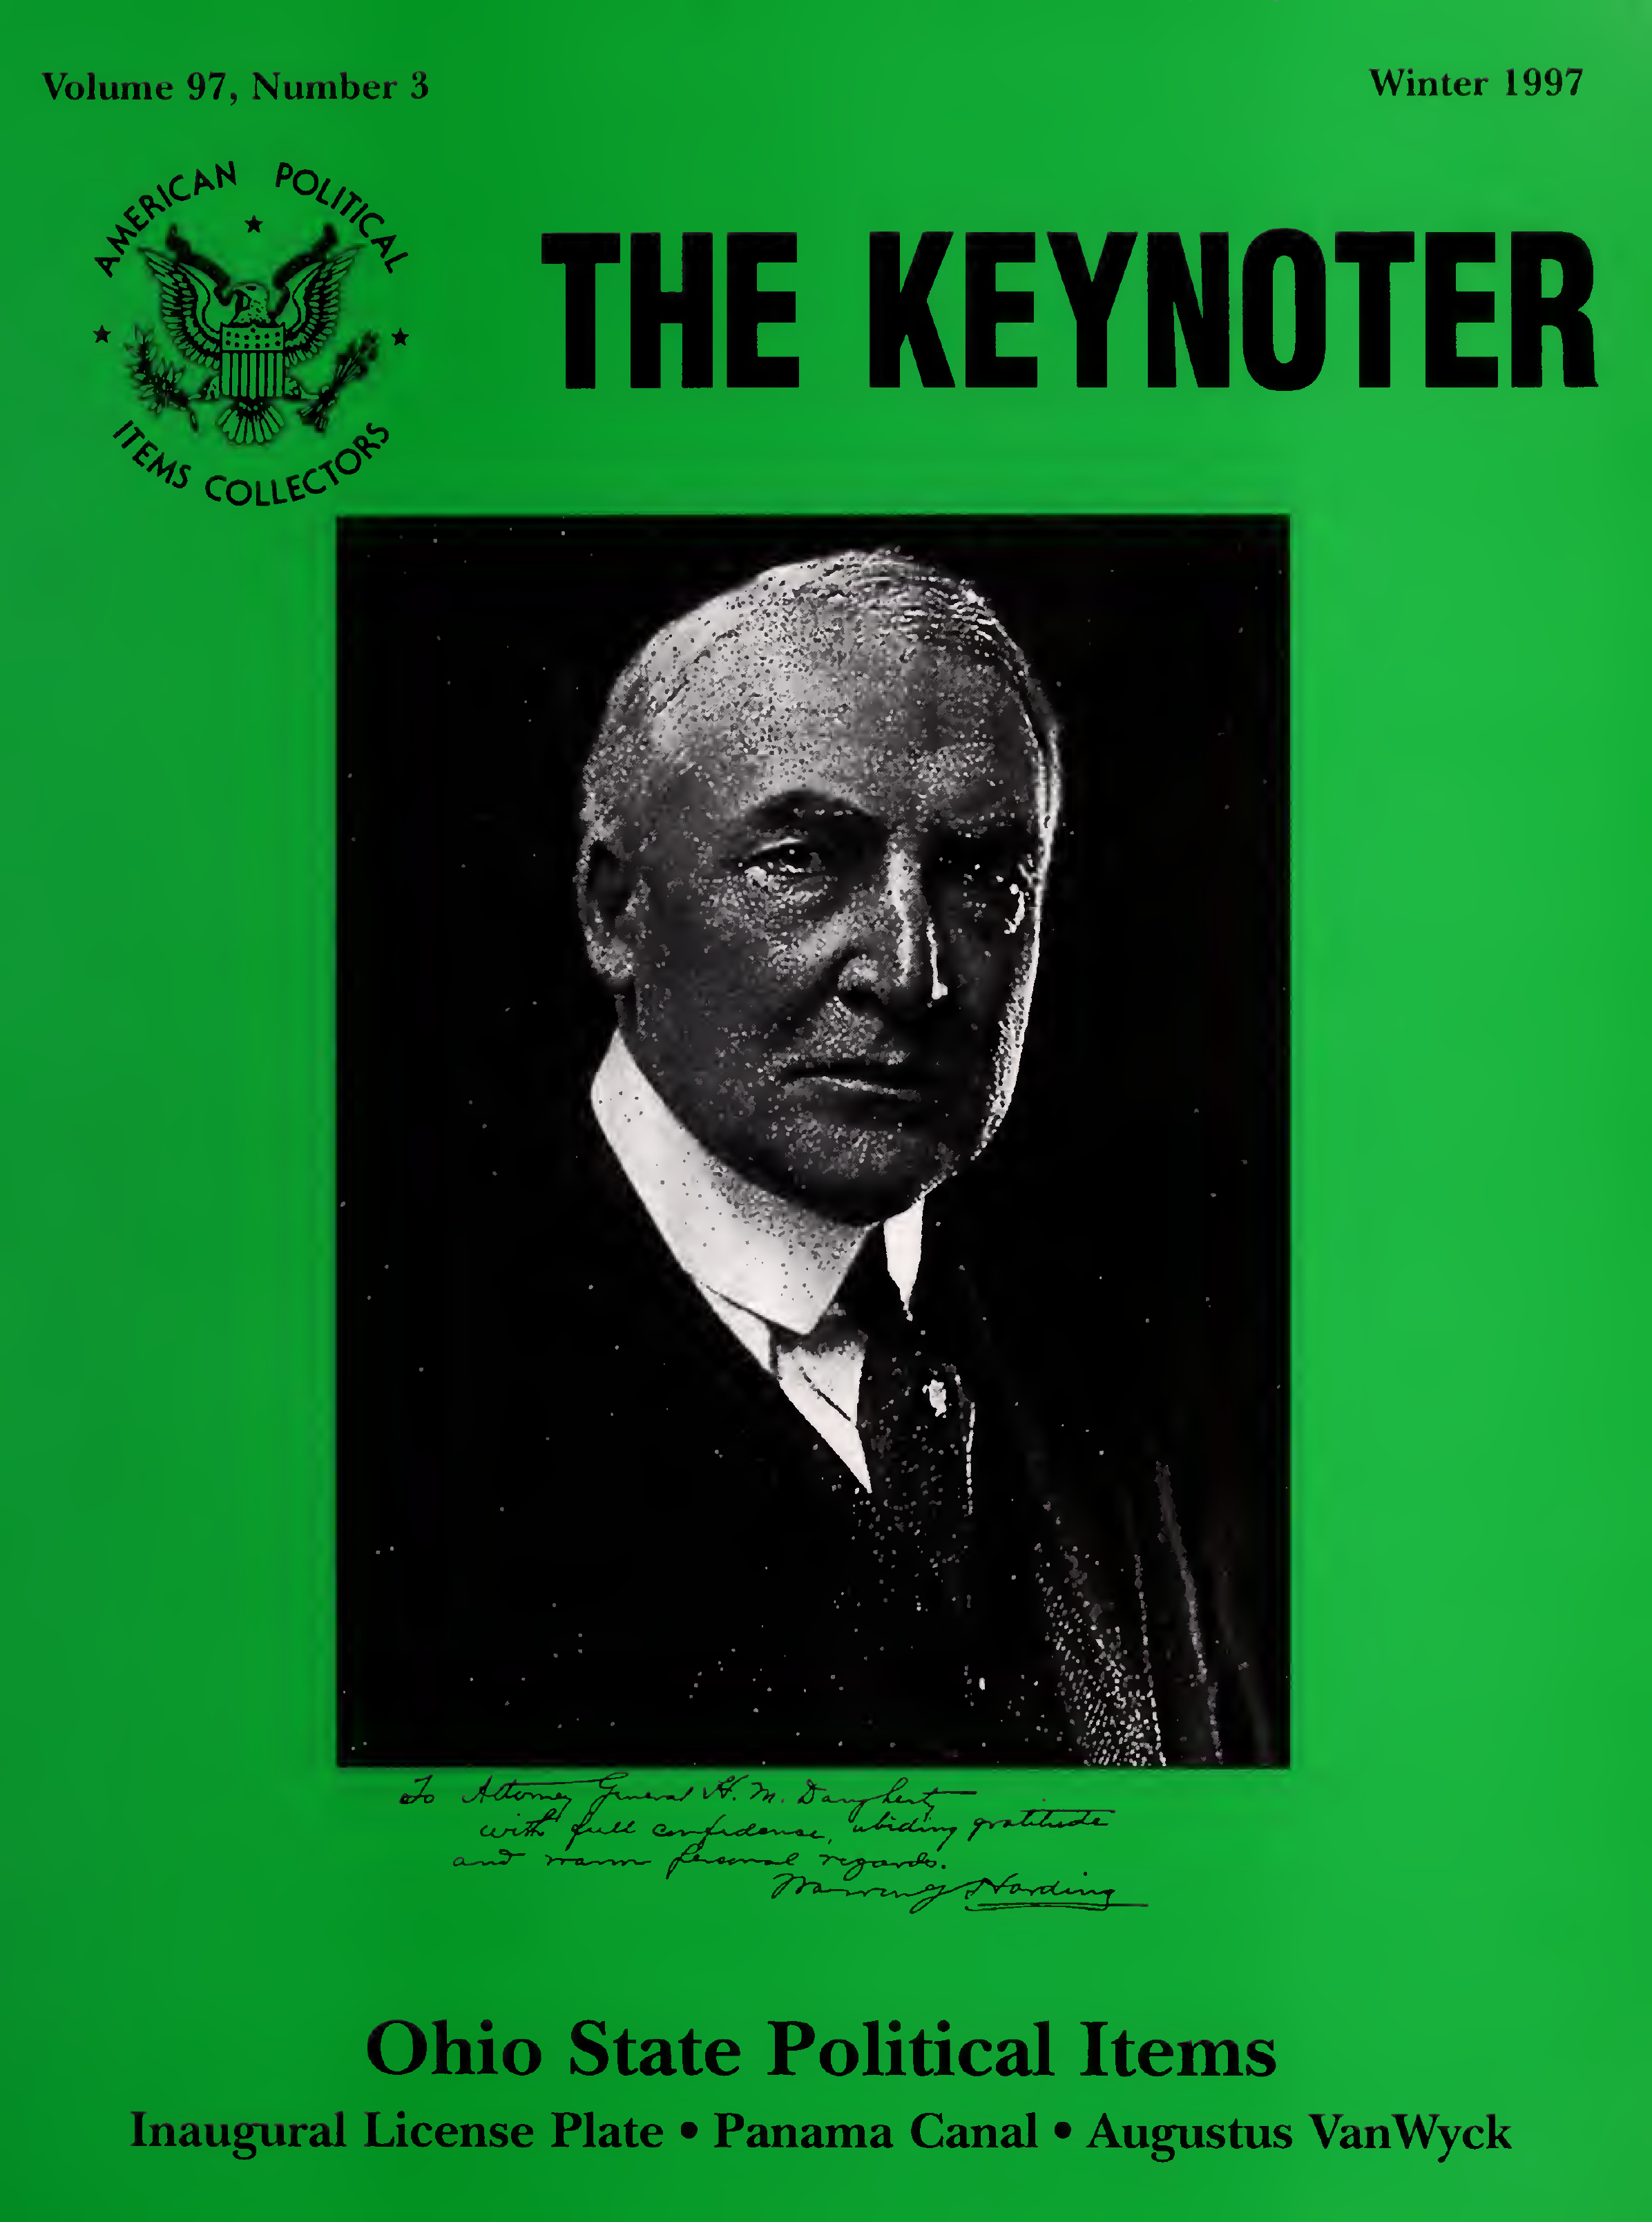 Keynoter 1997 - Winter - Issue 3